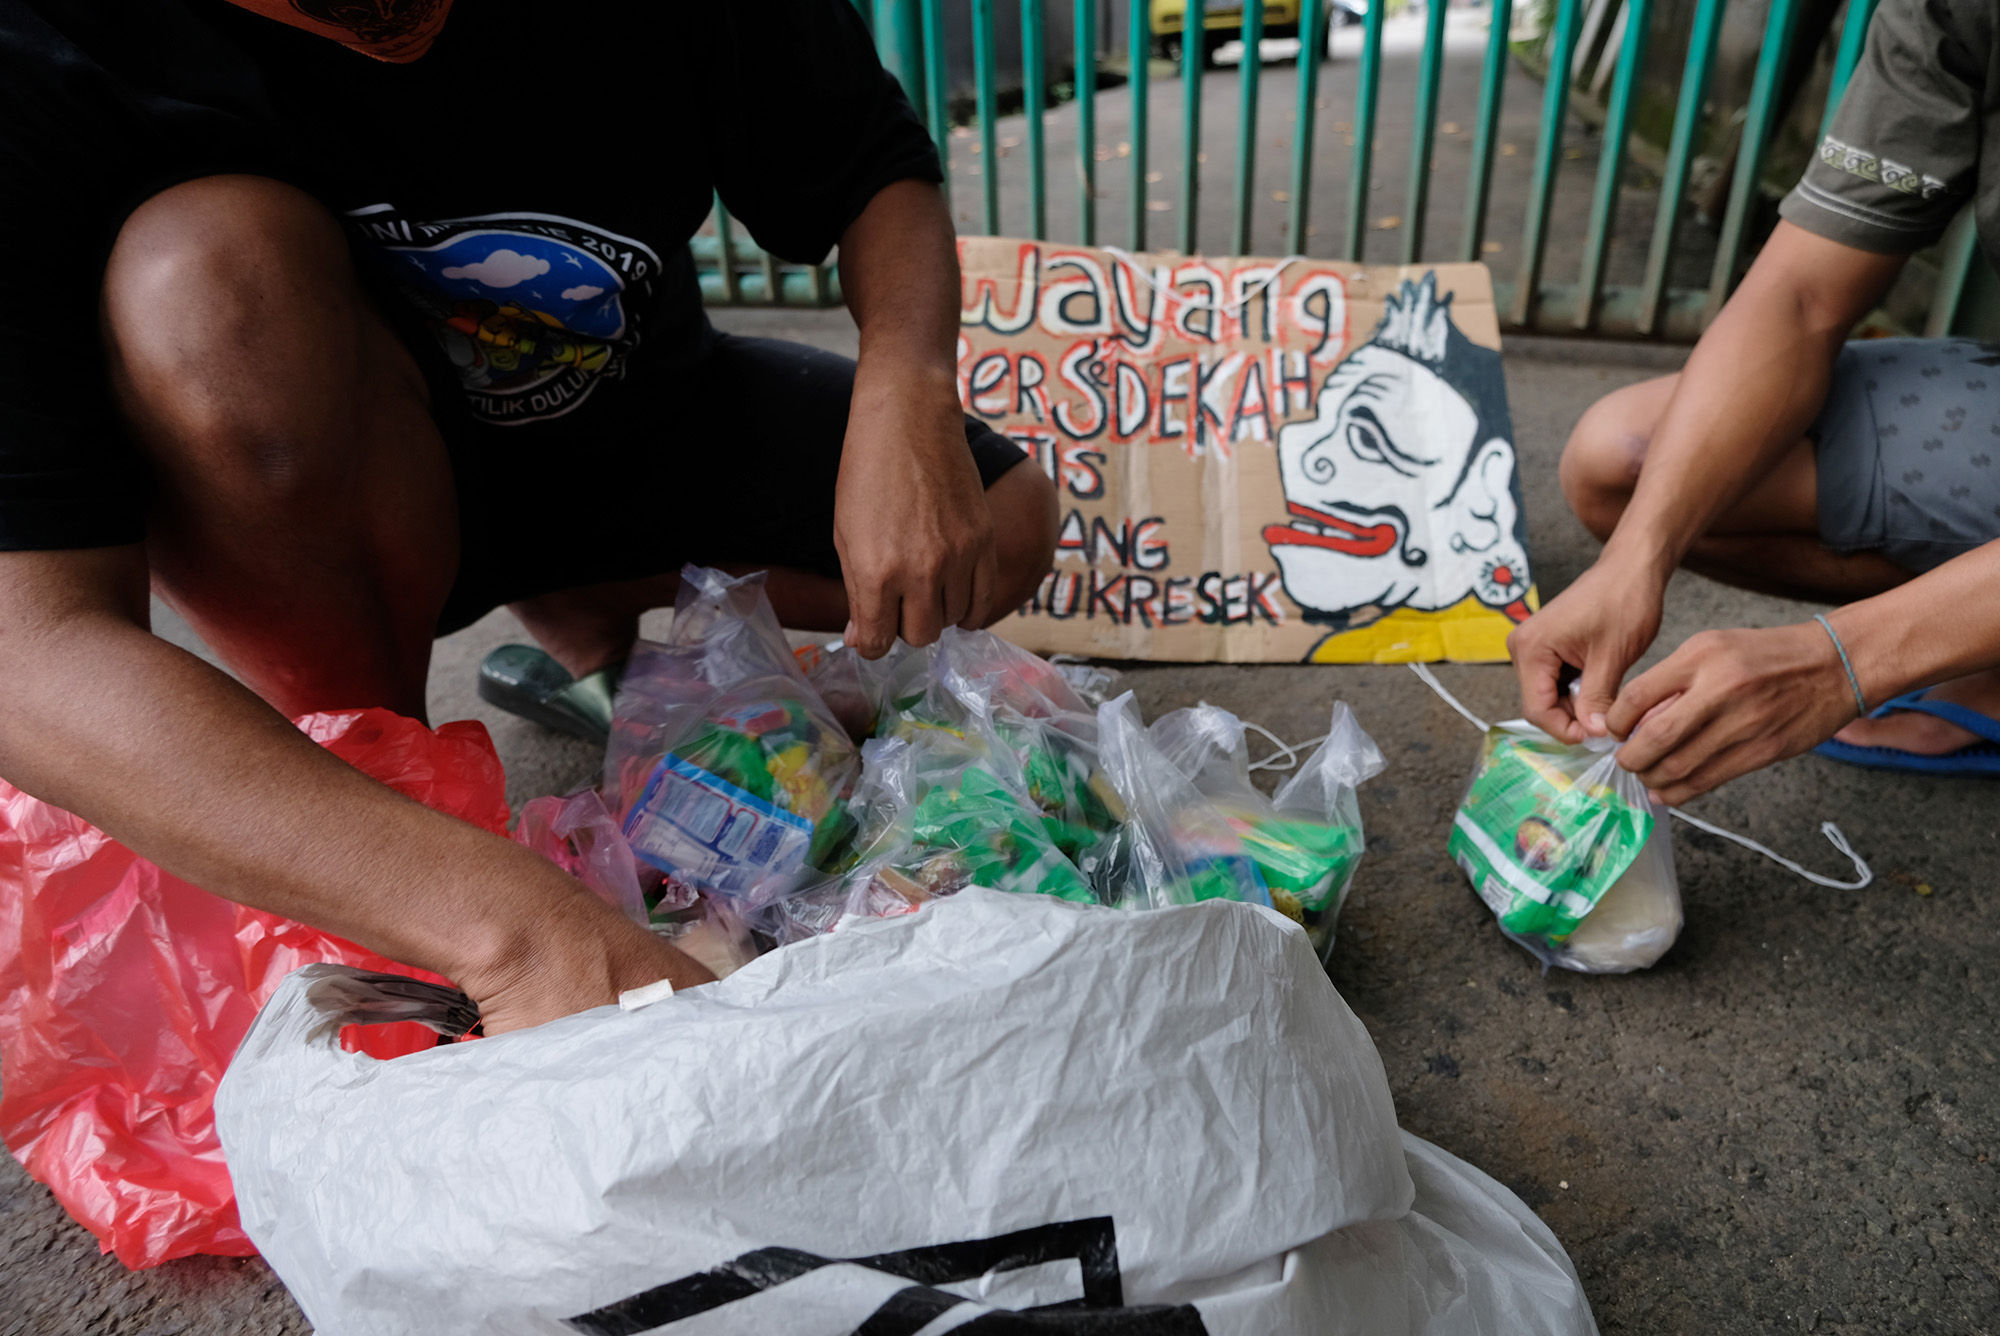 <p>Sejumlah paket bahan makanan yang akan dibagikan kepada warga yang melintas di Jalan Cawang Baru Utara, Jakarta Timur, Kamis (16/4/2020). Aksi bertajuk &#8220;Wayang Bersedekah&#8221; ini merupakan inisiatif Iskandar dalam menanggapi kondisi pandemi corona. Bahan makanan yang dibagikan kepada warga di dapat dari hasil penjualan wayang berbahan sampah daur ulang. Dalam sehari rata-rata sebanyak 20 paket [&hellip;]</p>
